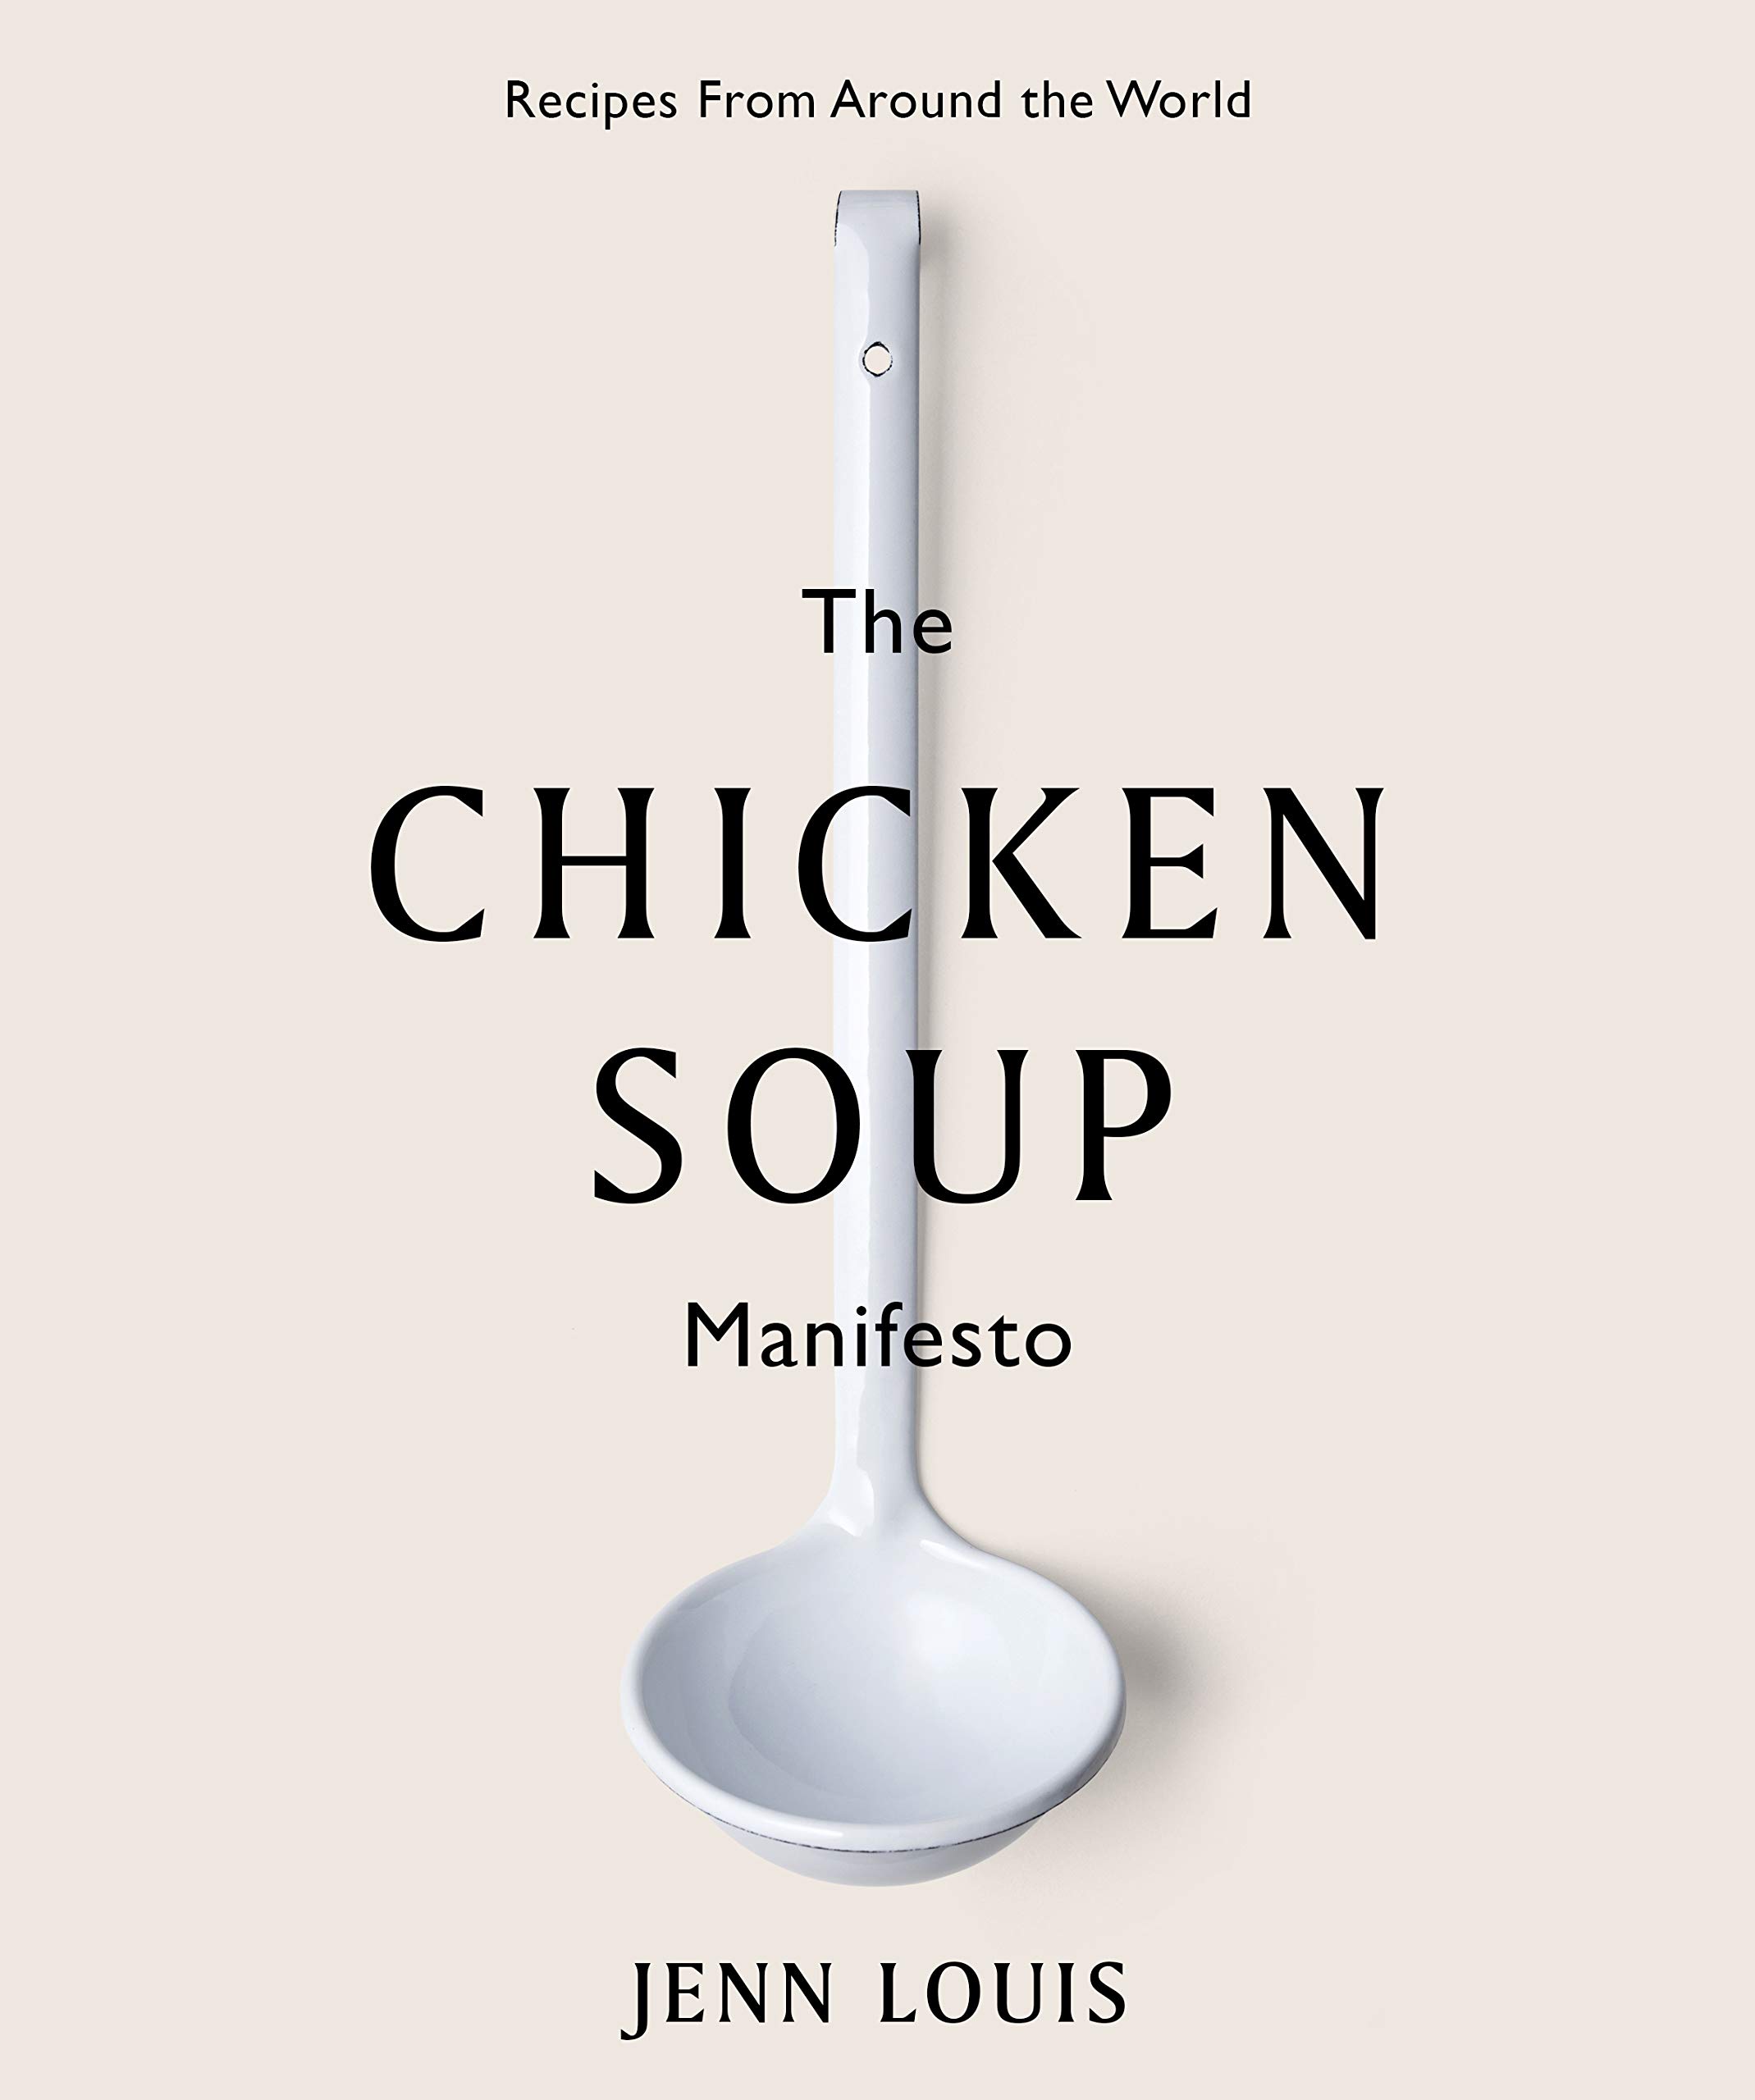 Chicken Soup Manifesto | Jenn Louis image0